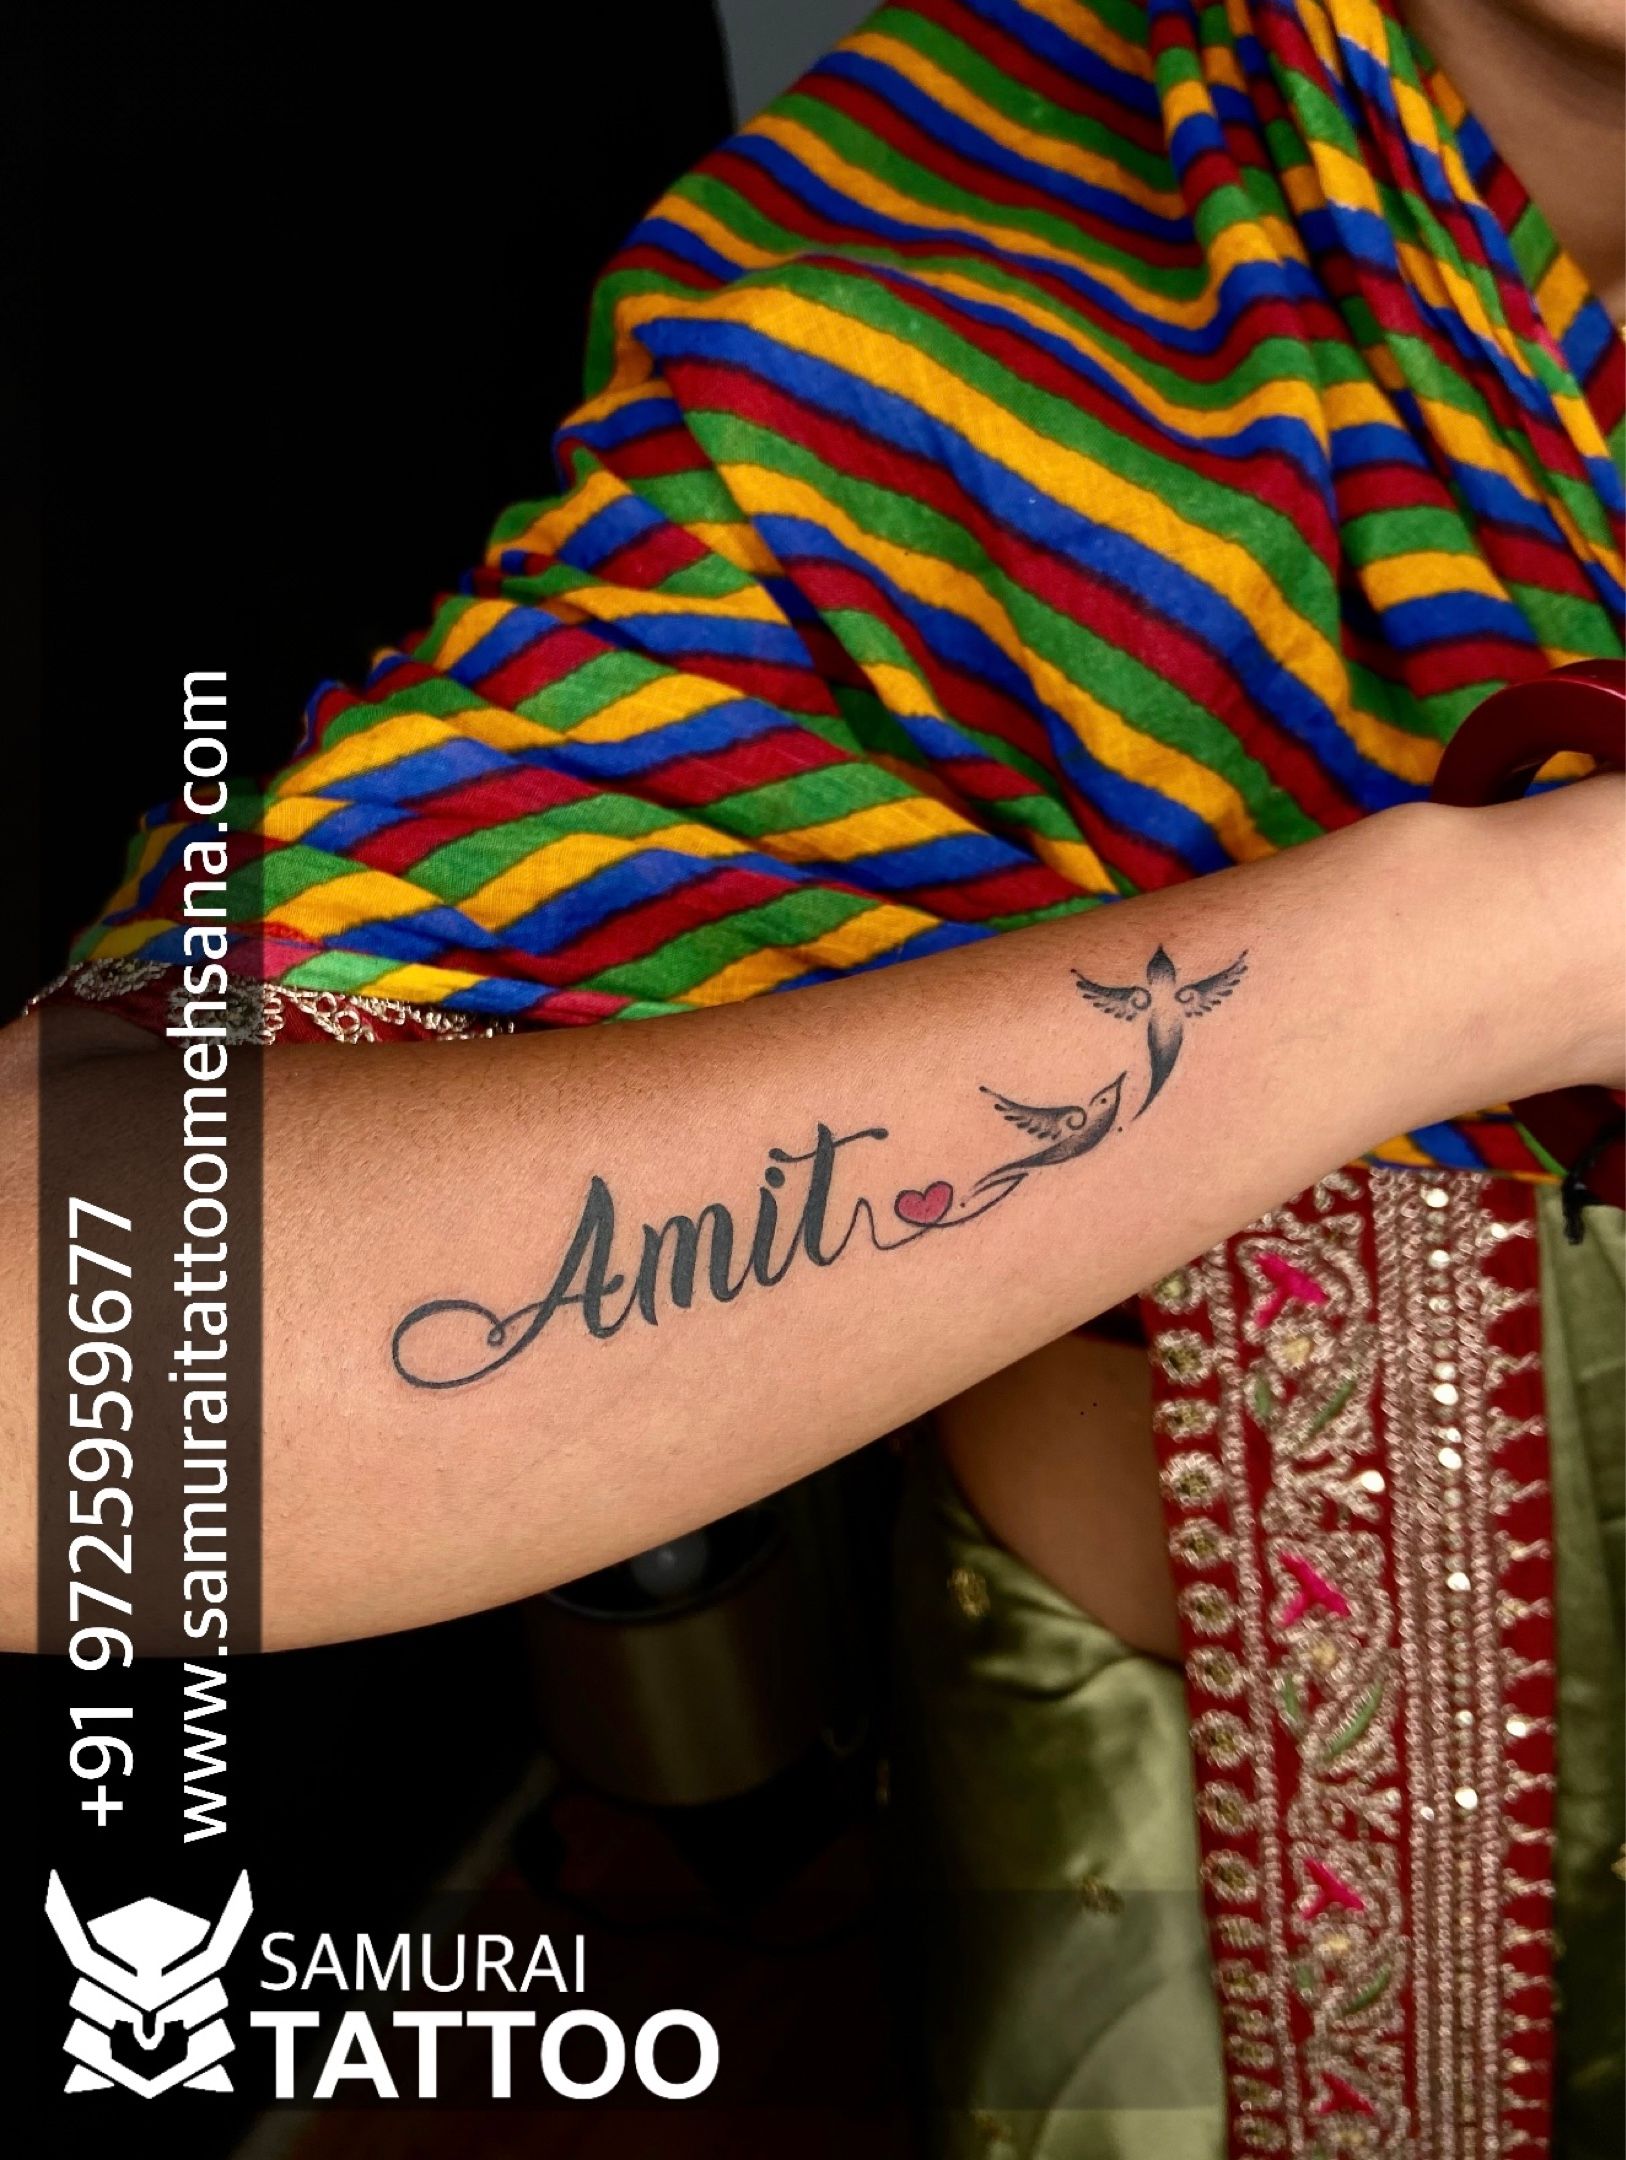 Name Tattoos Done By ajtattoopune  AJ Tattoo Studio  Facebook